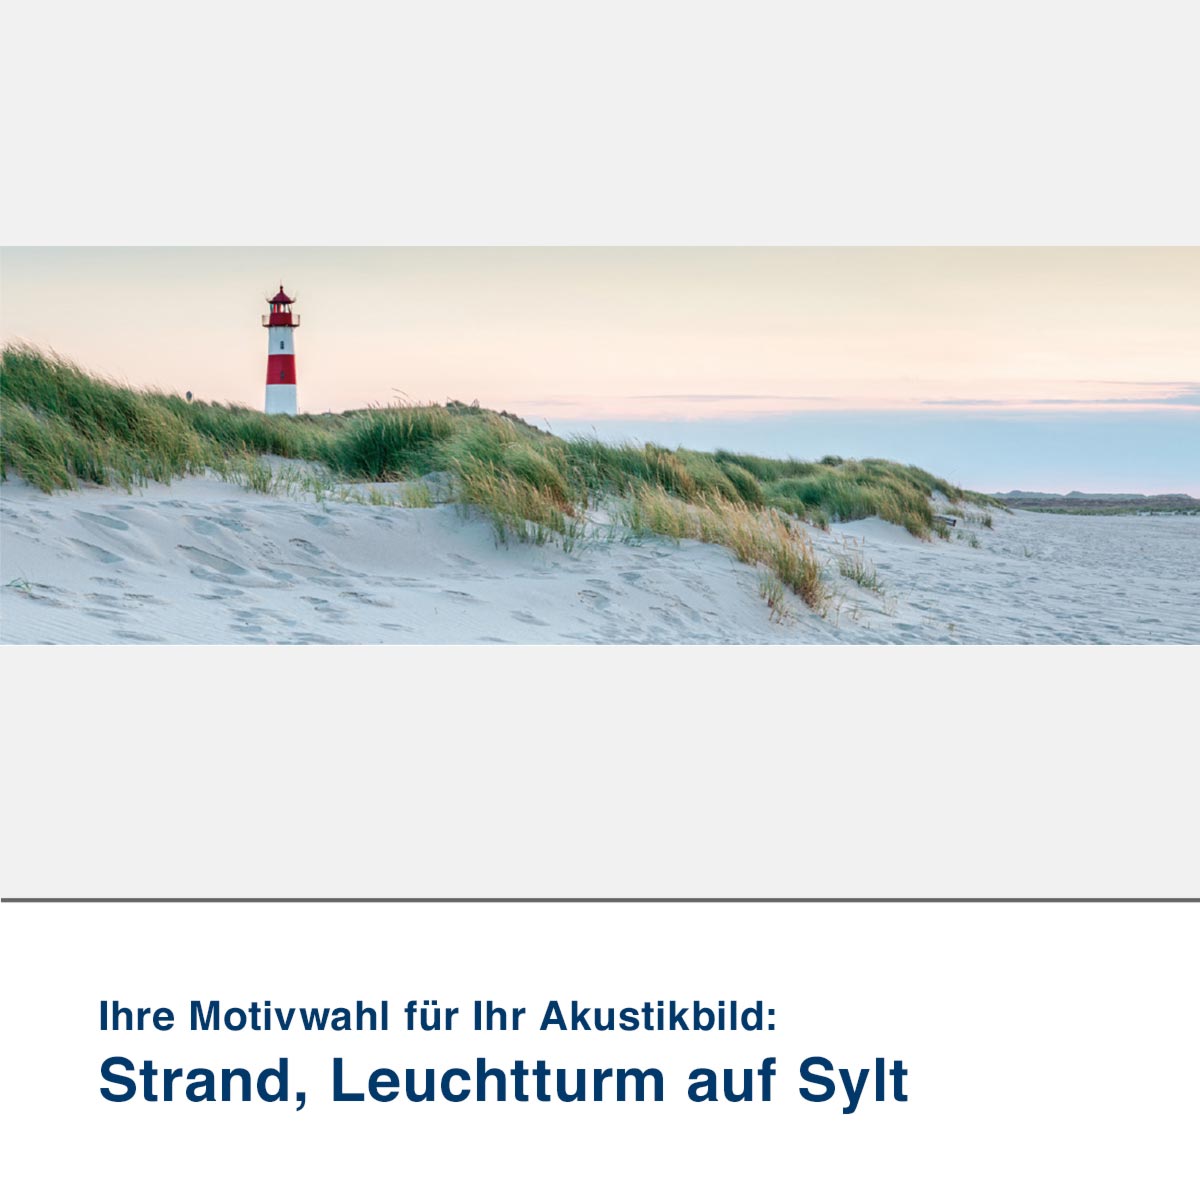 Akustikbild Motiv Strand, Leuchtturm auf Sylt